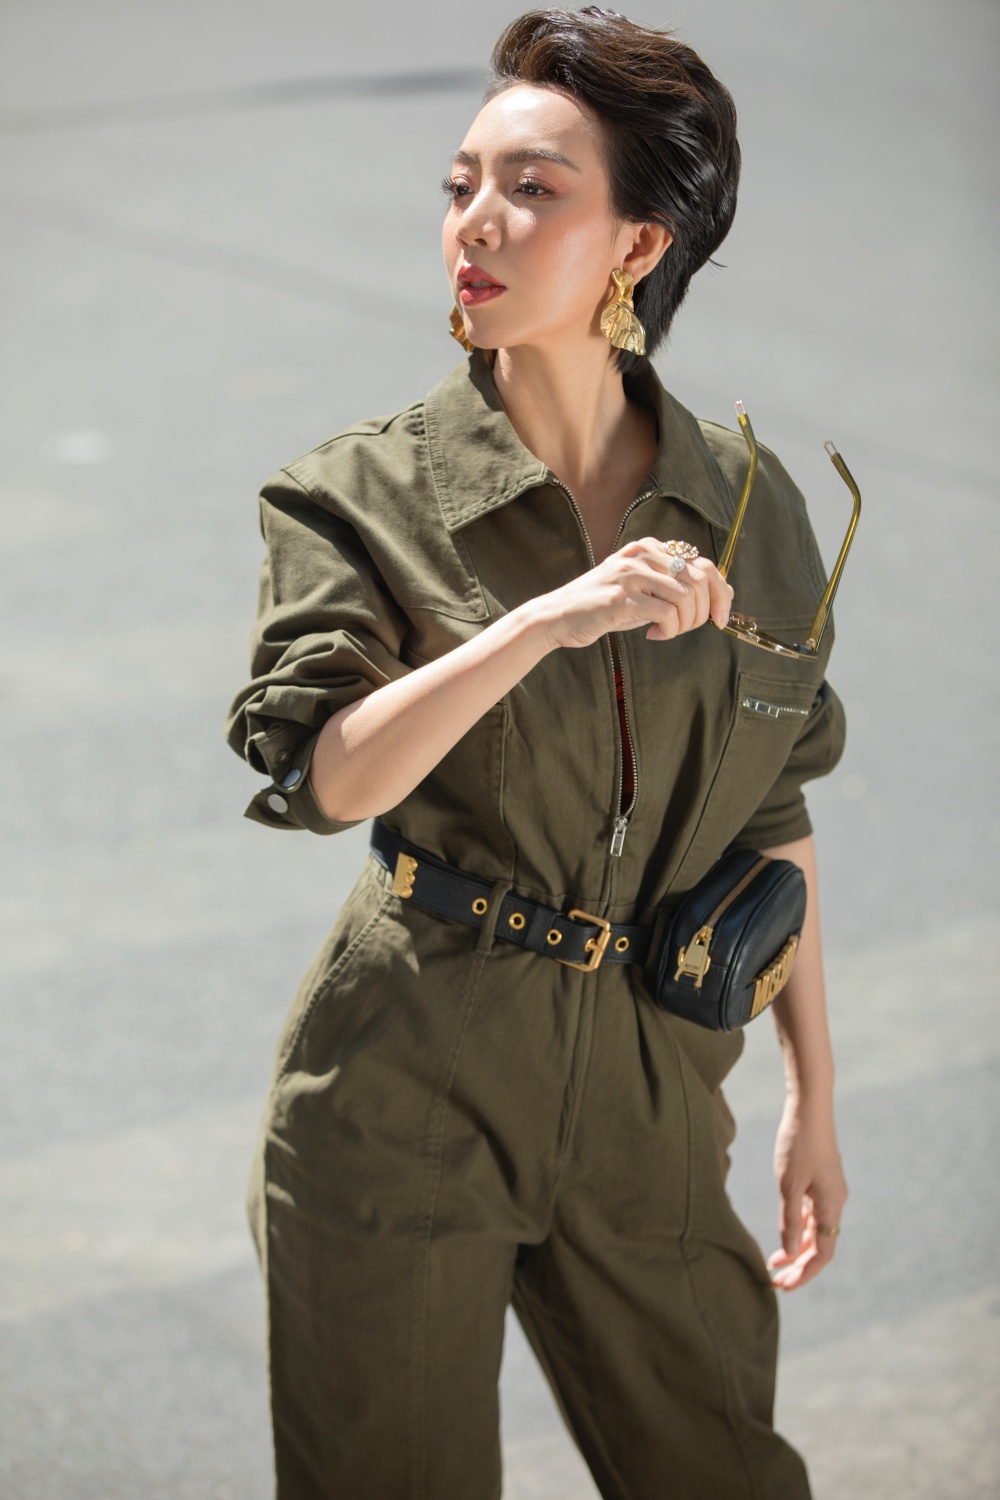 Hoa hậu hài Thu Trang mặc gợi cảm đi dạo phố - Ảnh 8.